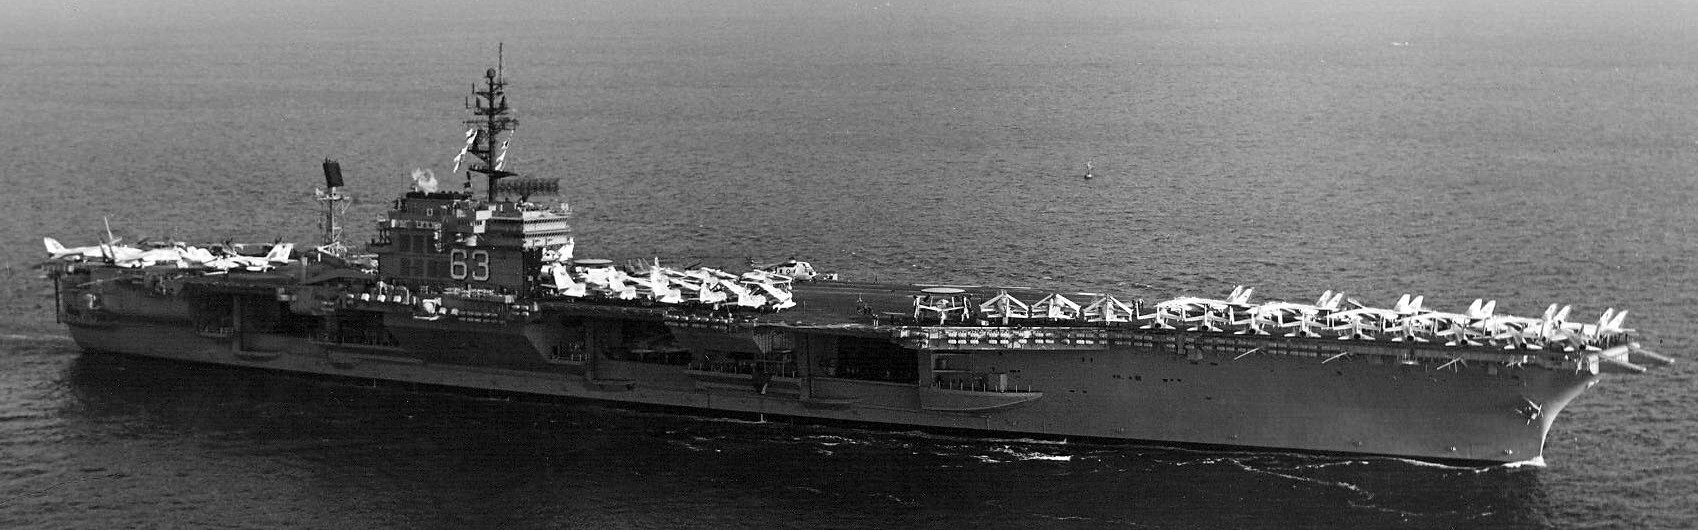 cv-63 uss kitty hawk aircraft carrier air wing cvw-11 us navy 298